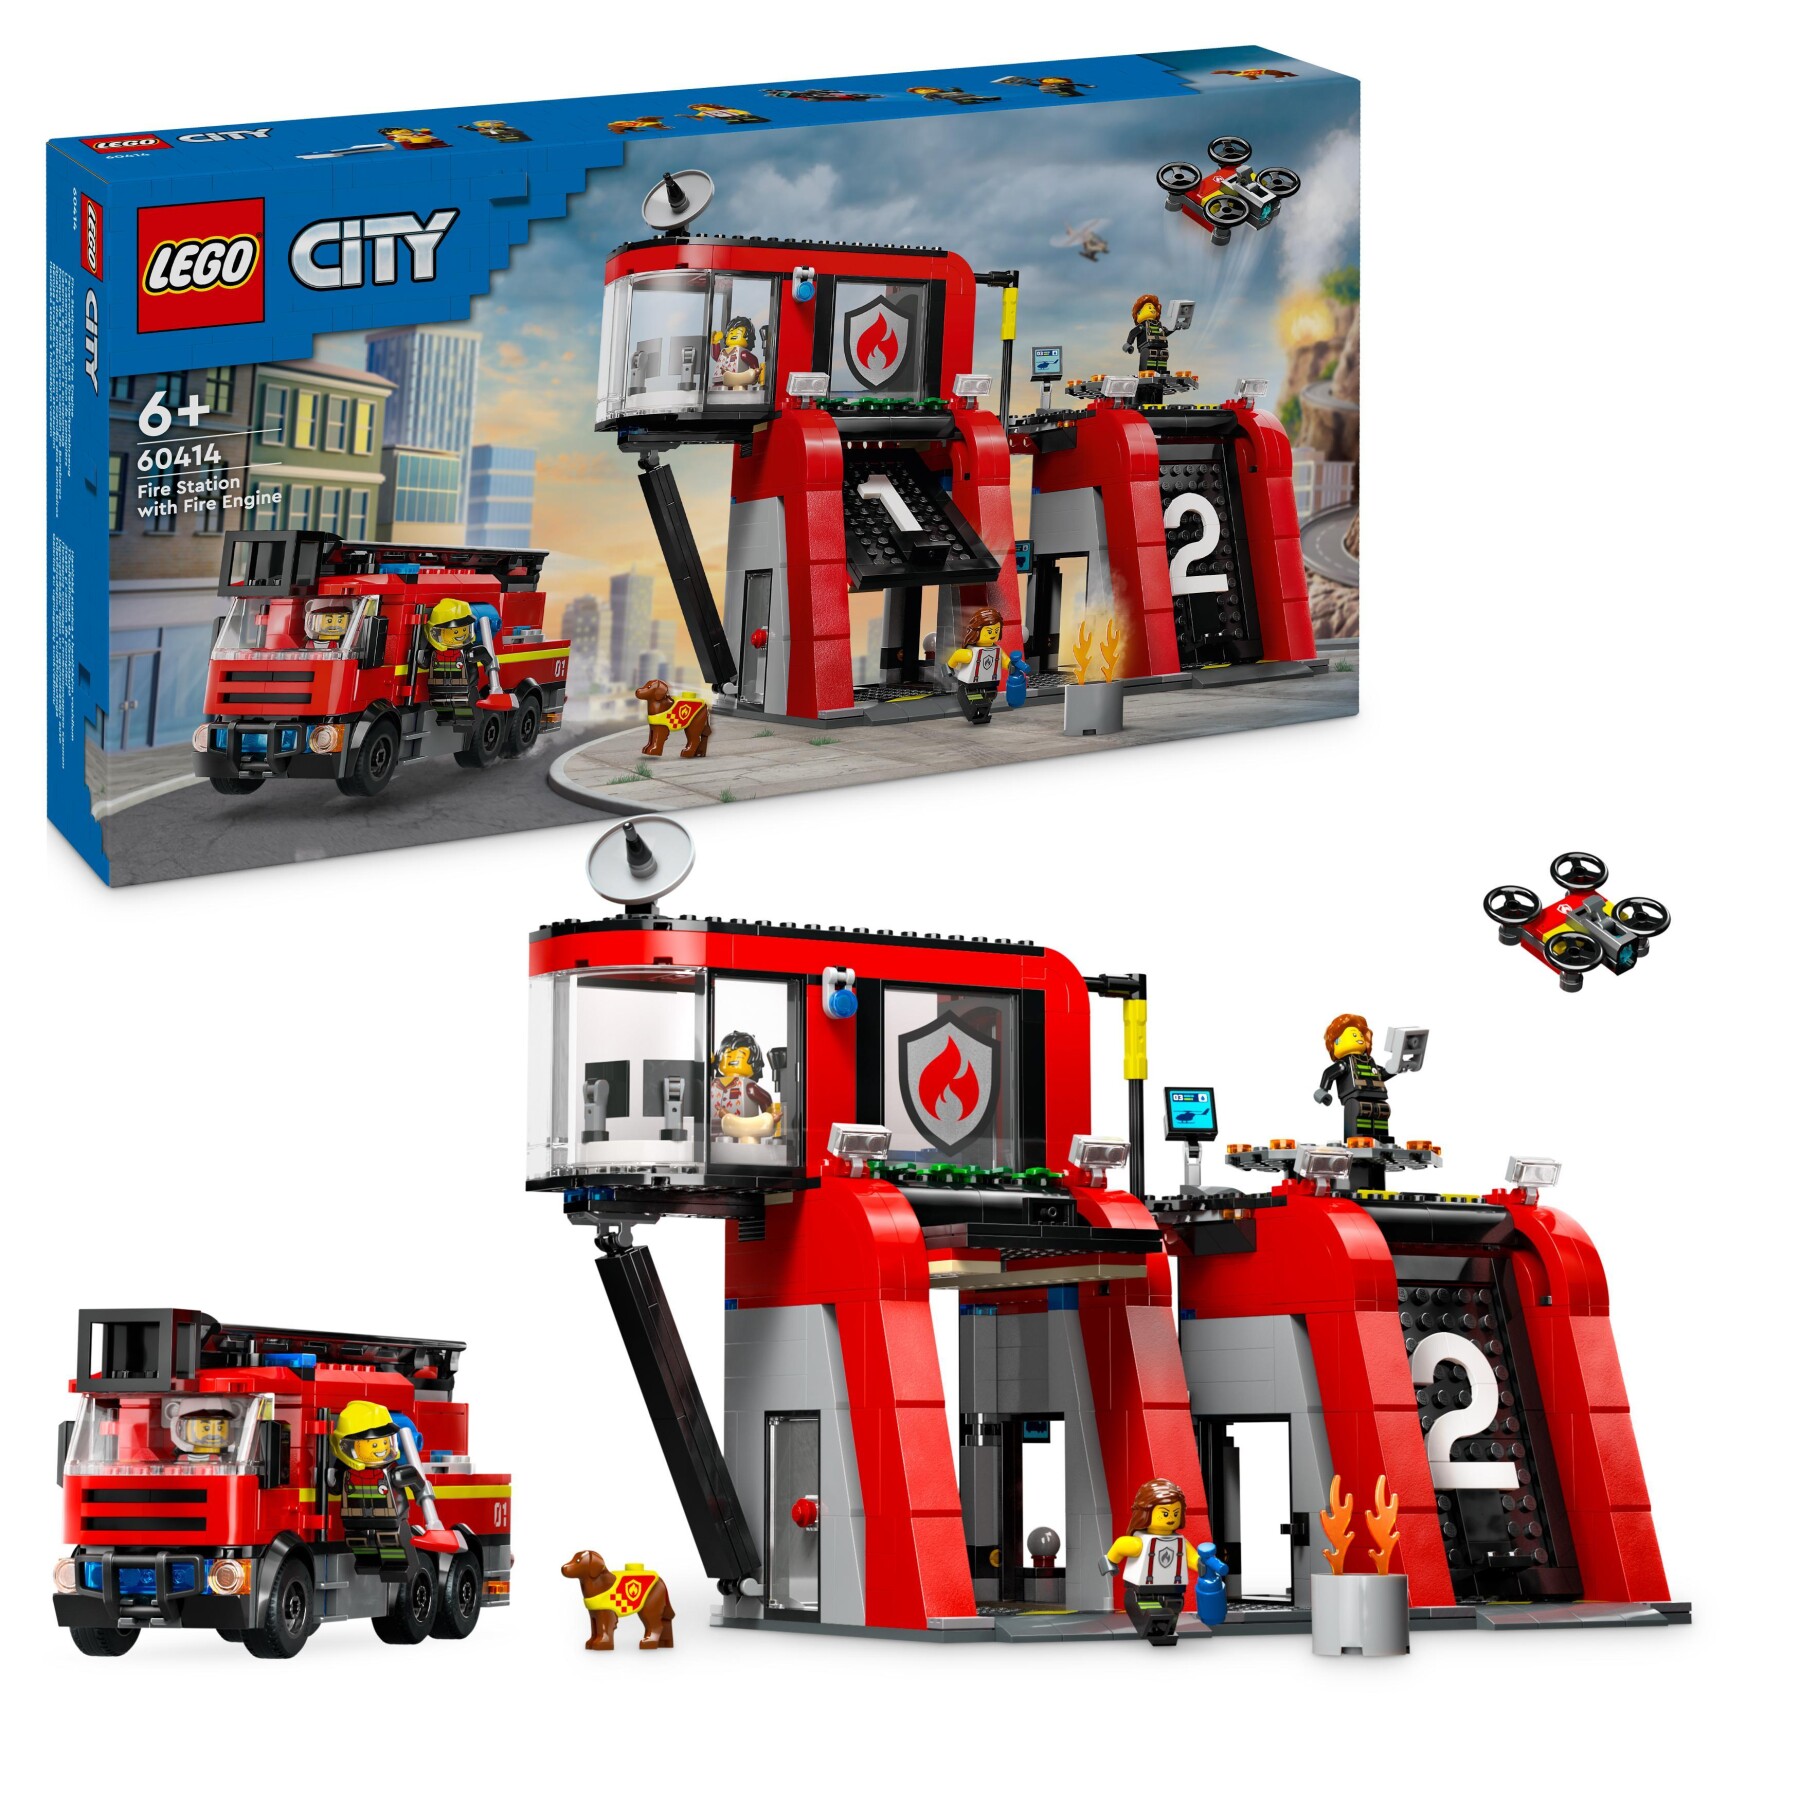 Lego city 60414 caserma dei pompieri e autopompa con camion giocattolo, 6 minifigure, cane e accessori, gioco per bambini 6+ - LEGO CITY